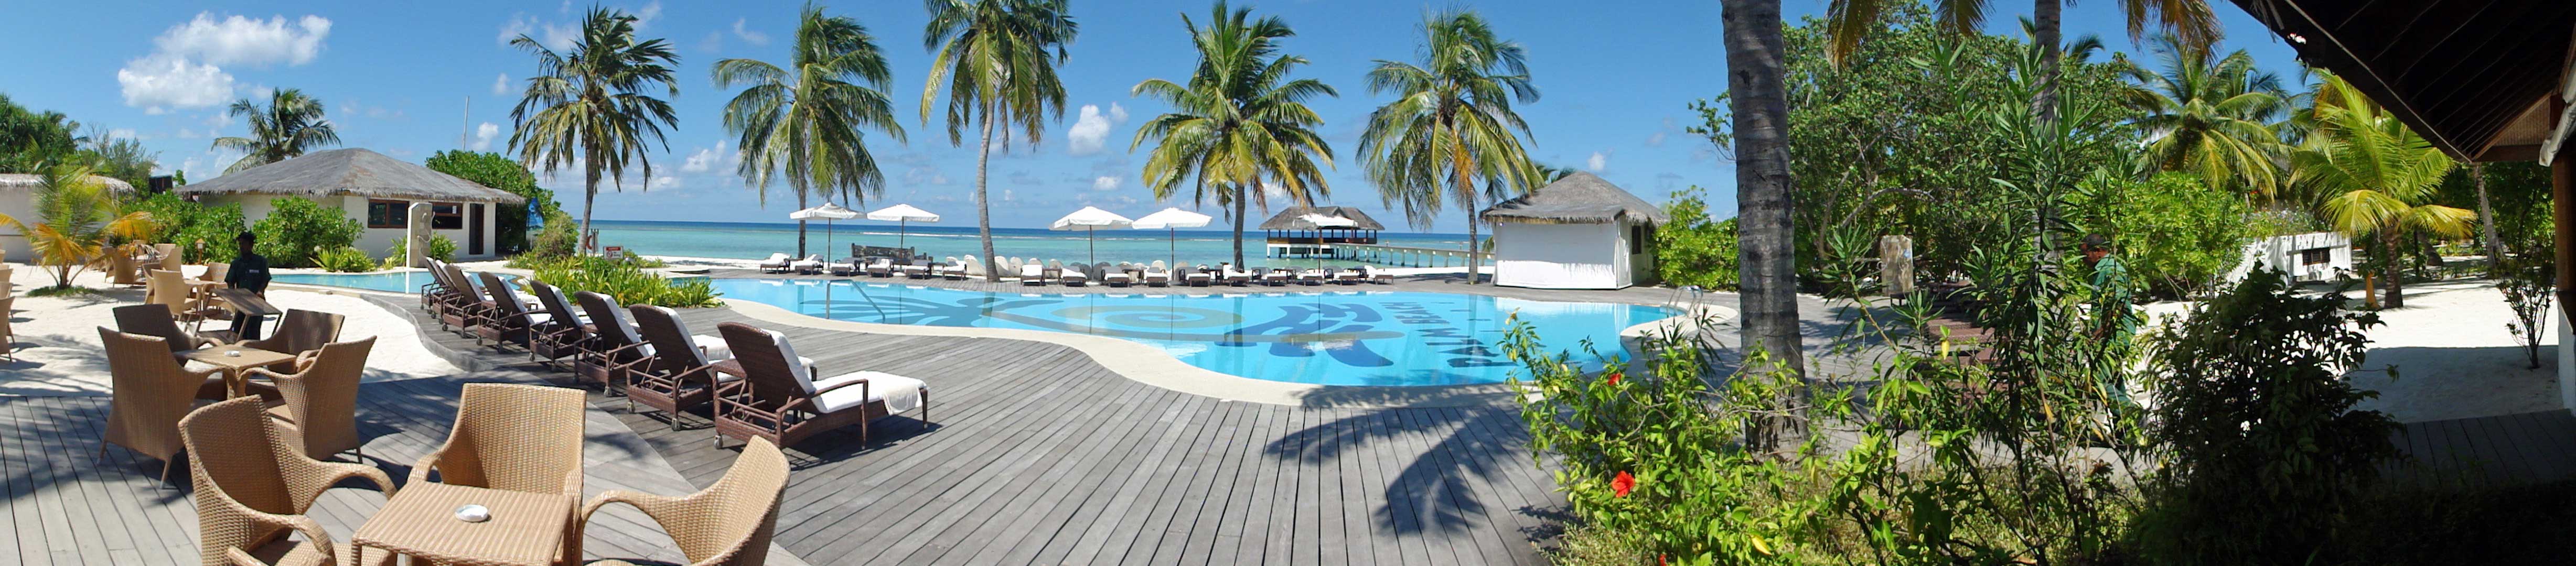 viaggio di nozze Maldive: la piscina del resort